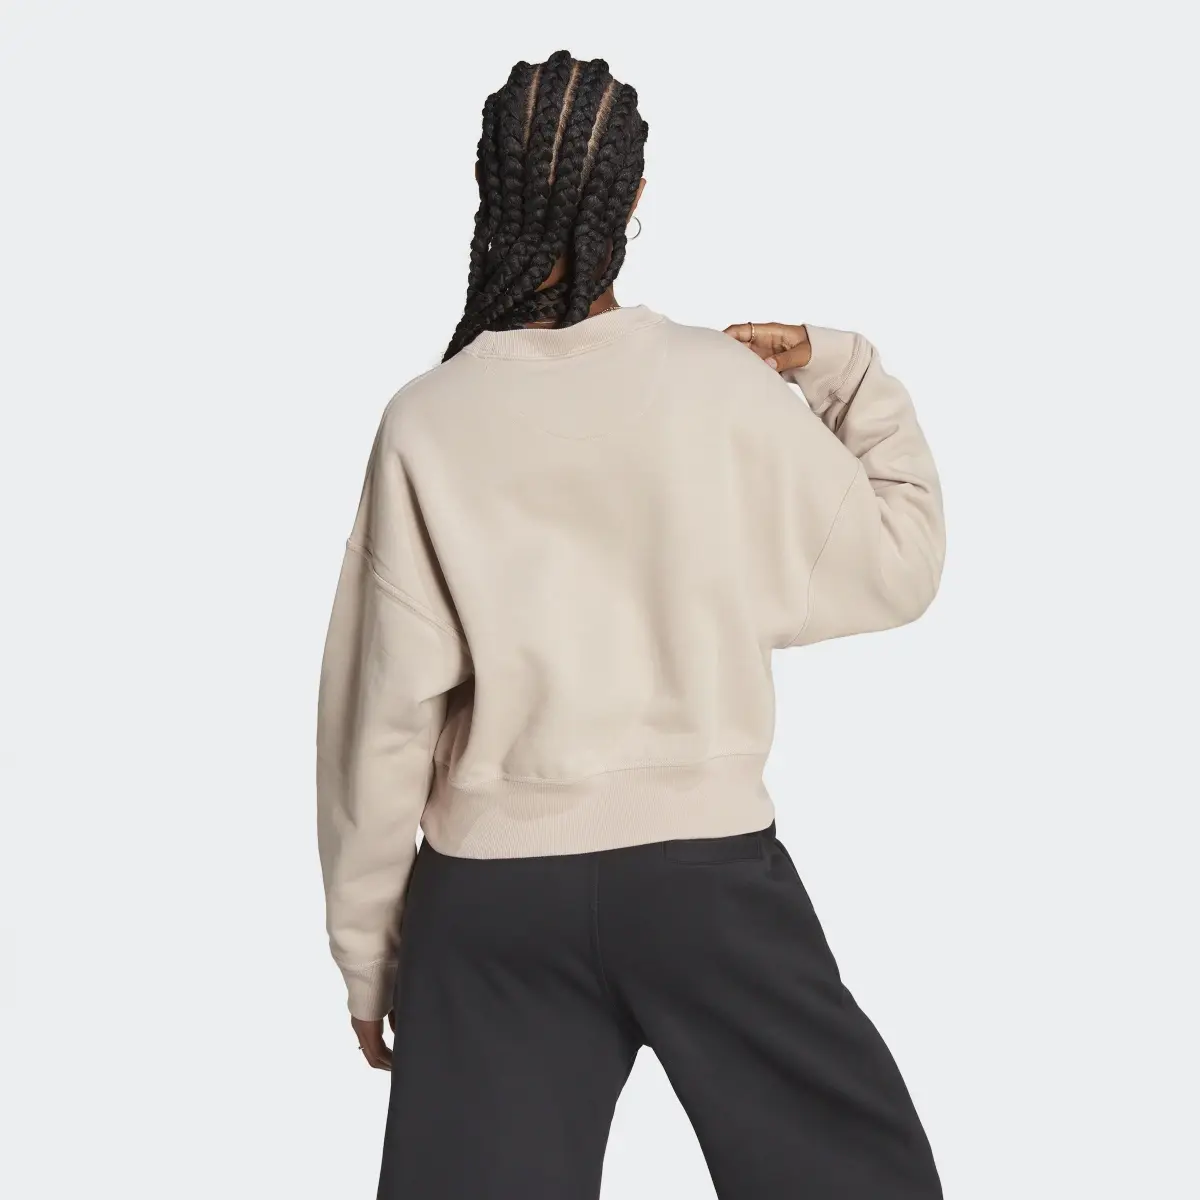 Adidas Lounge Fleece Sweatshirt. 3